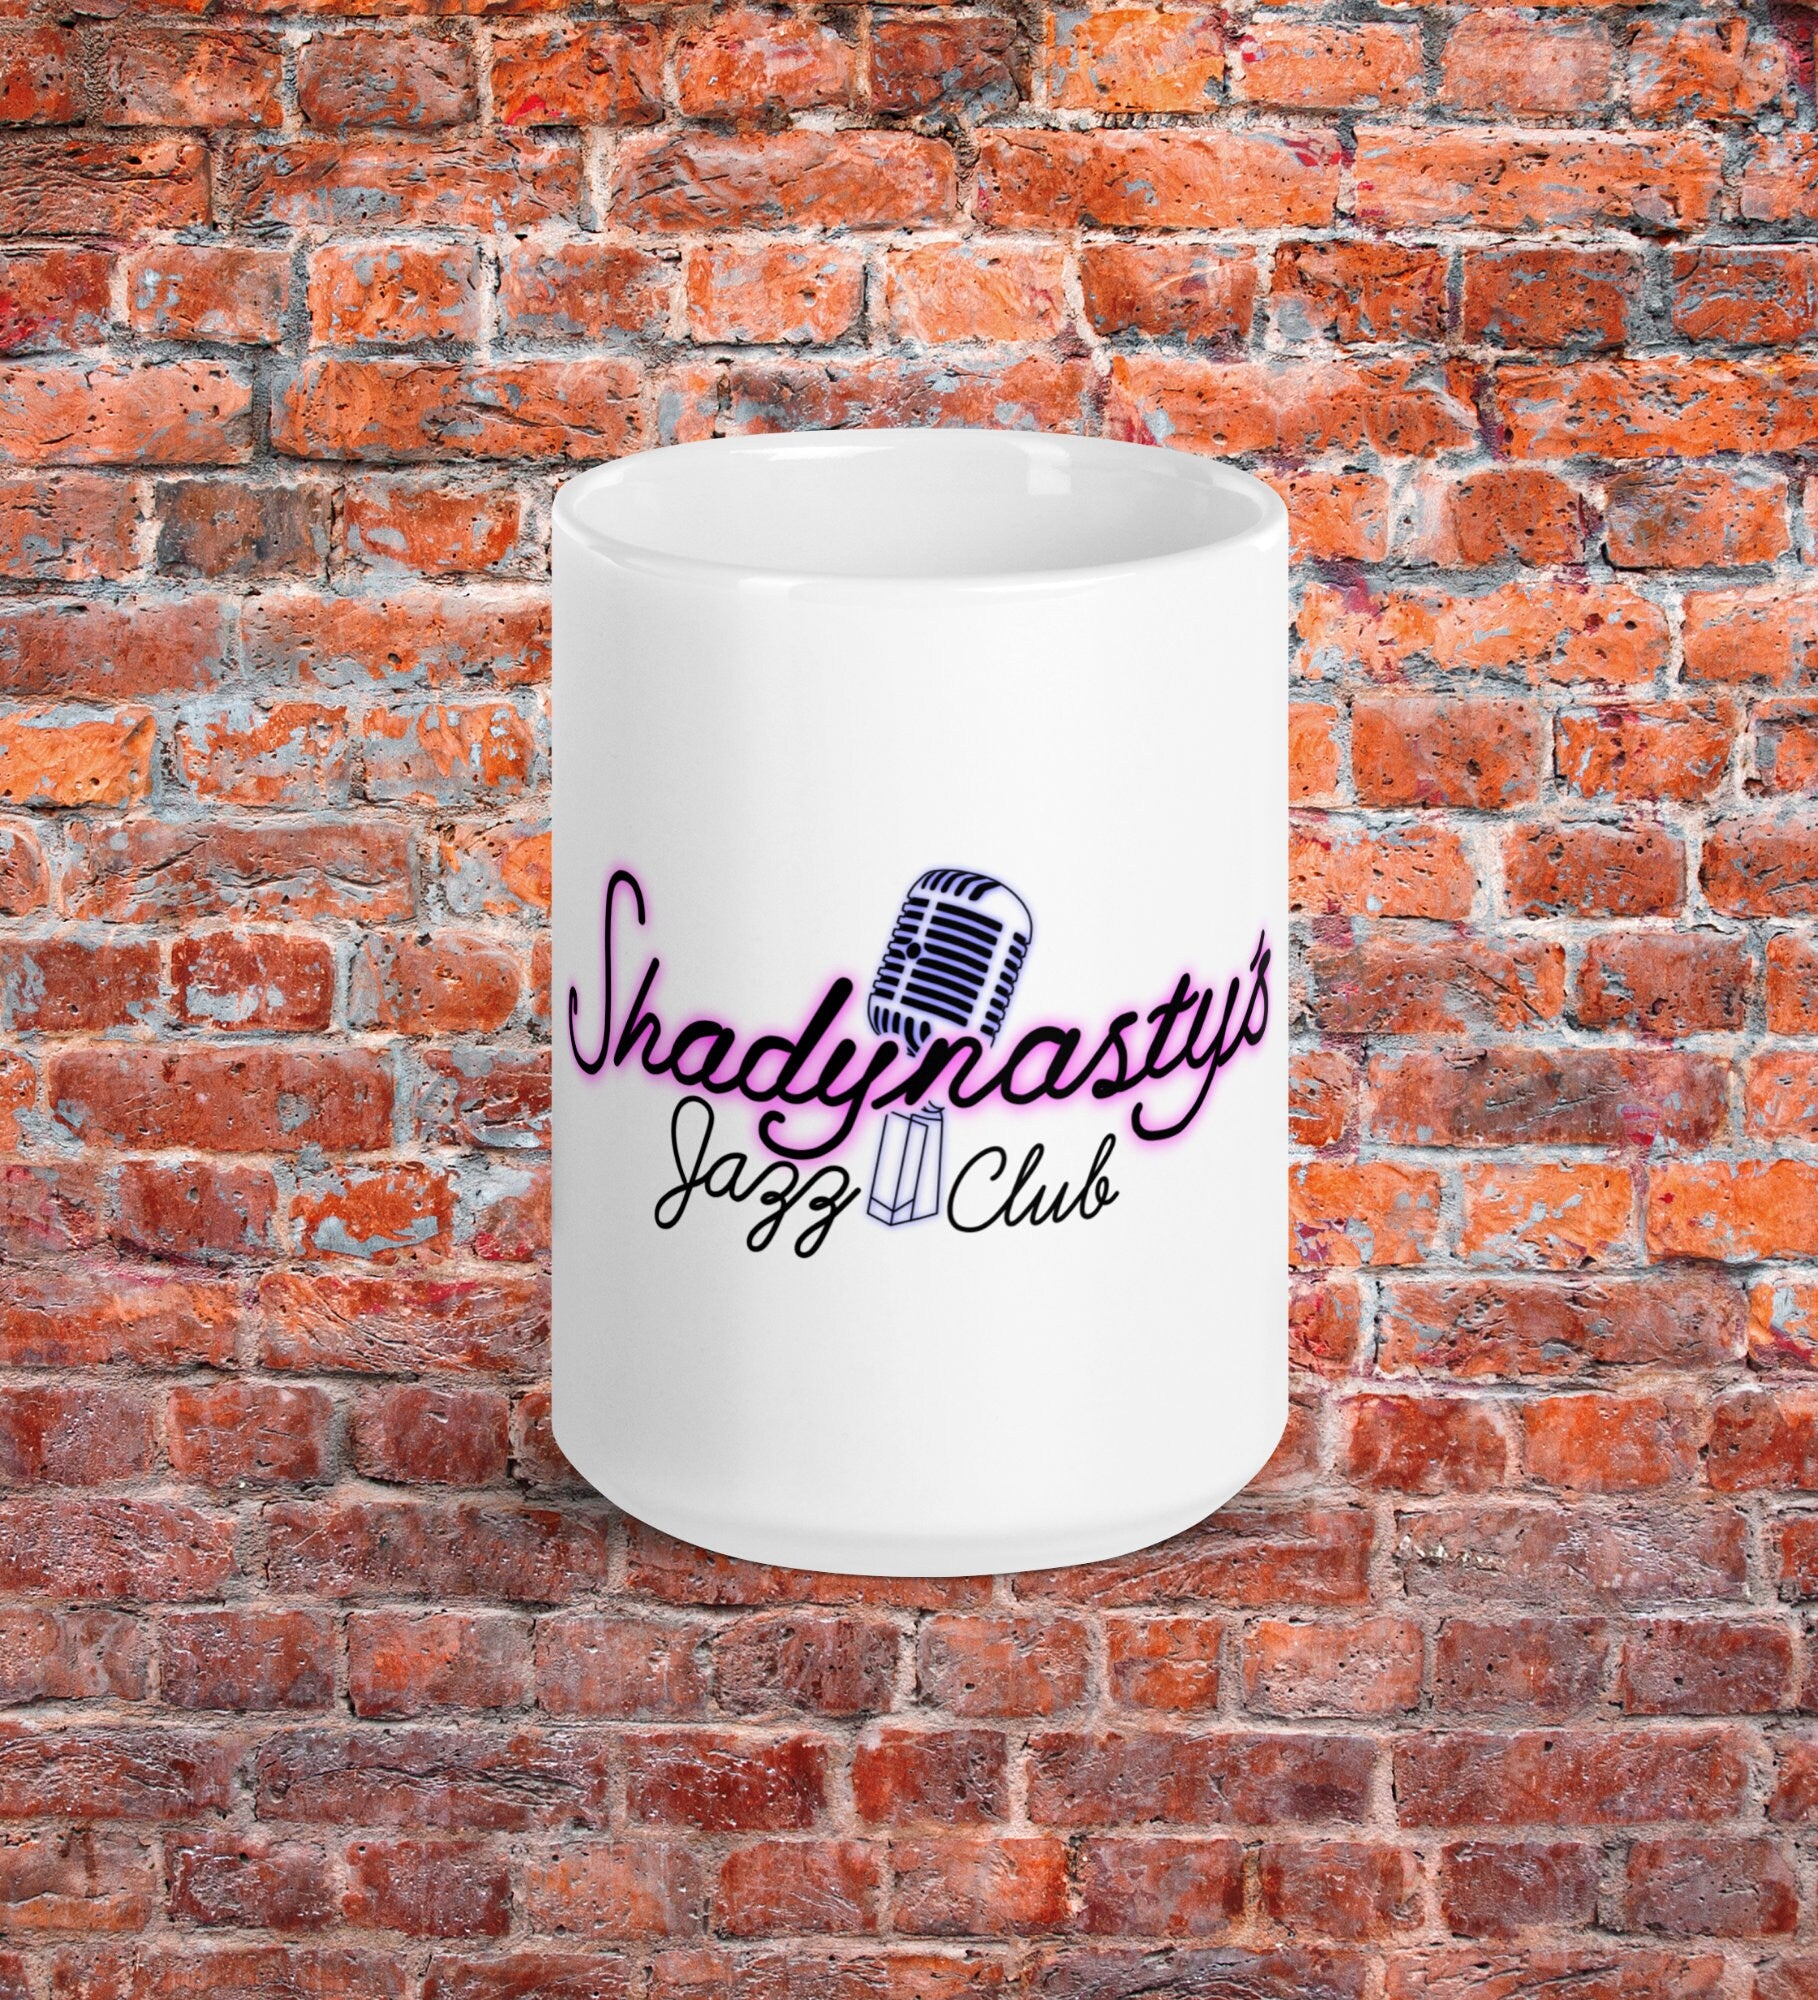 Shadynasty's White Glossy Mug | Always Sunny in Philadelphia Fan Art